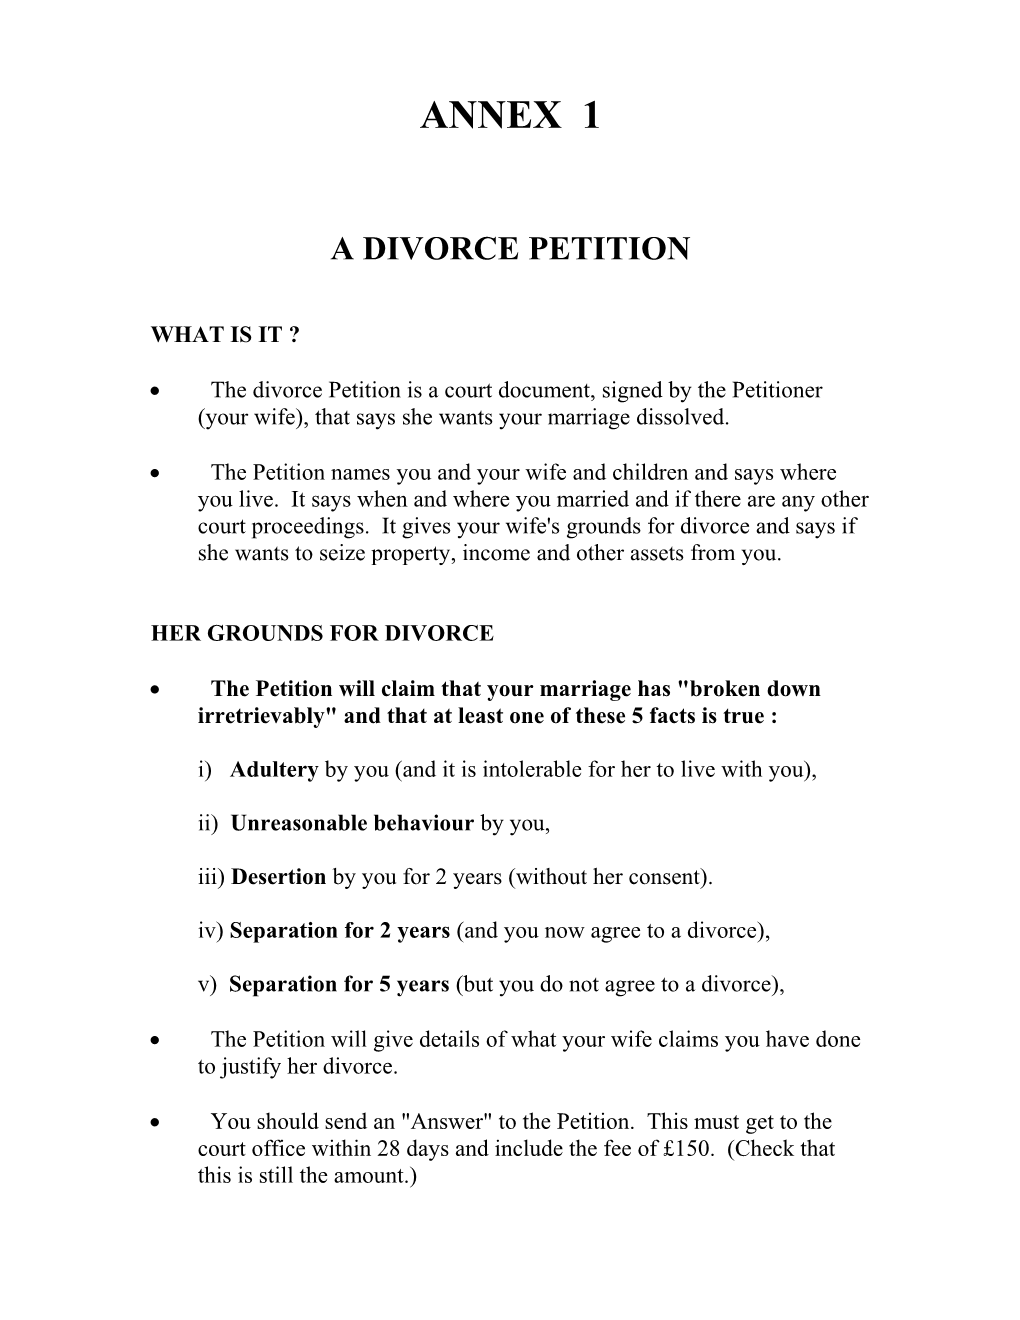 A Divorce Petition